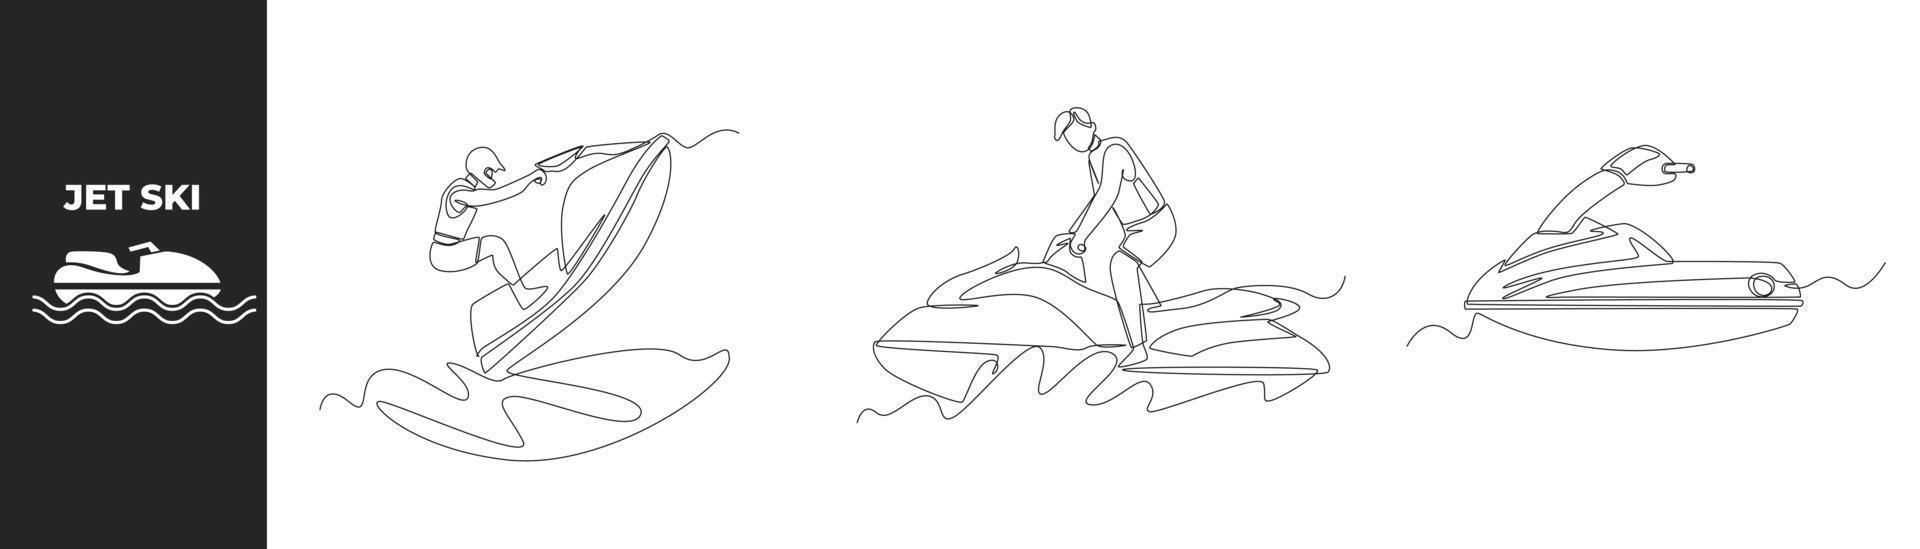 concepto de conjunto de motos acuáticas de dibujo de una sola línea. deportista montando y saltando jet ski e ícono de jet ski. ilustración de vector gráfico de diseño de dibujo de línea continua.